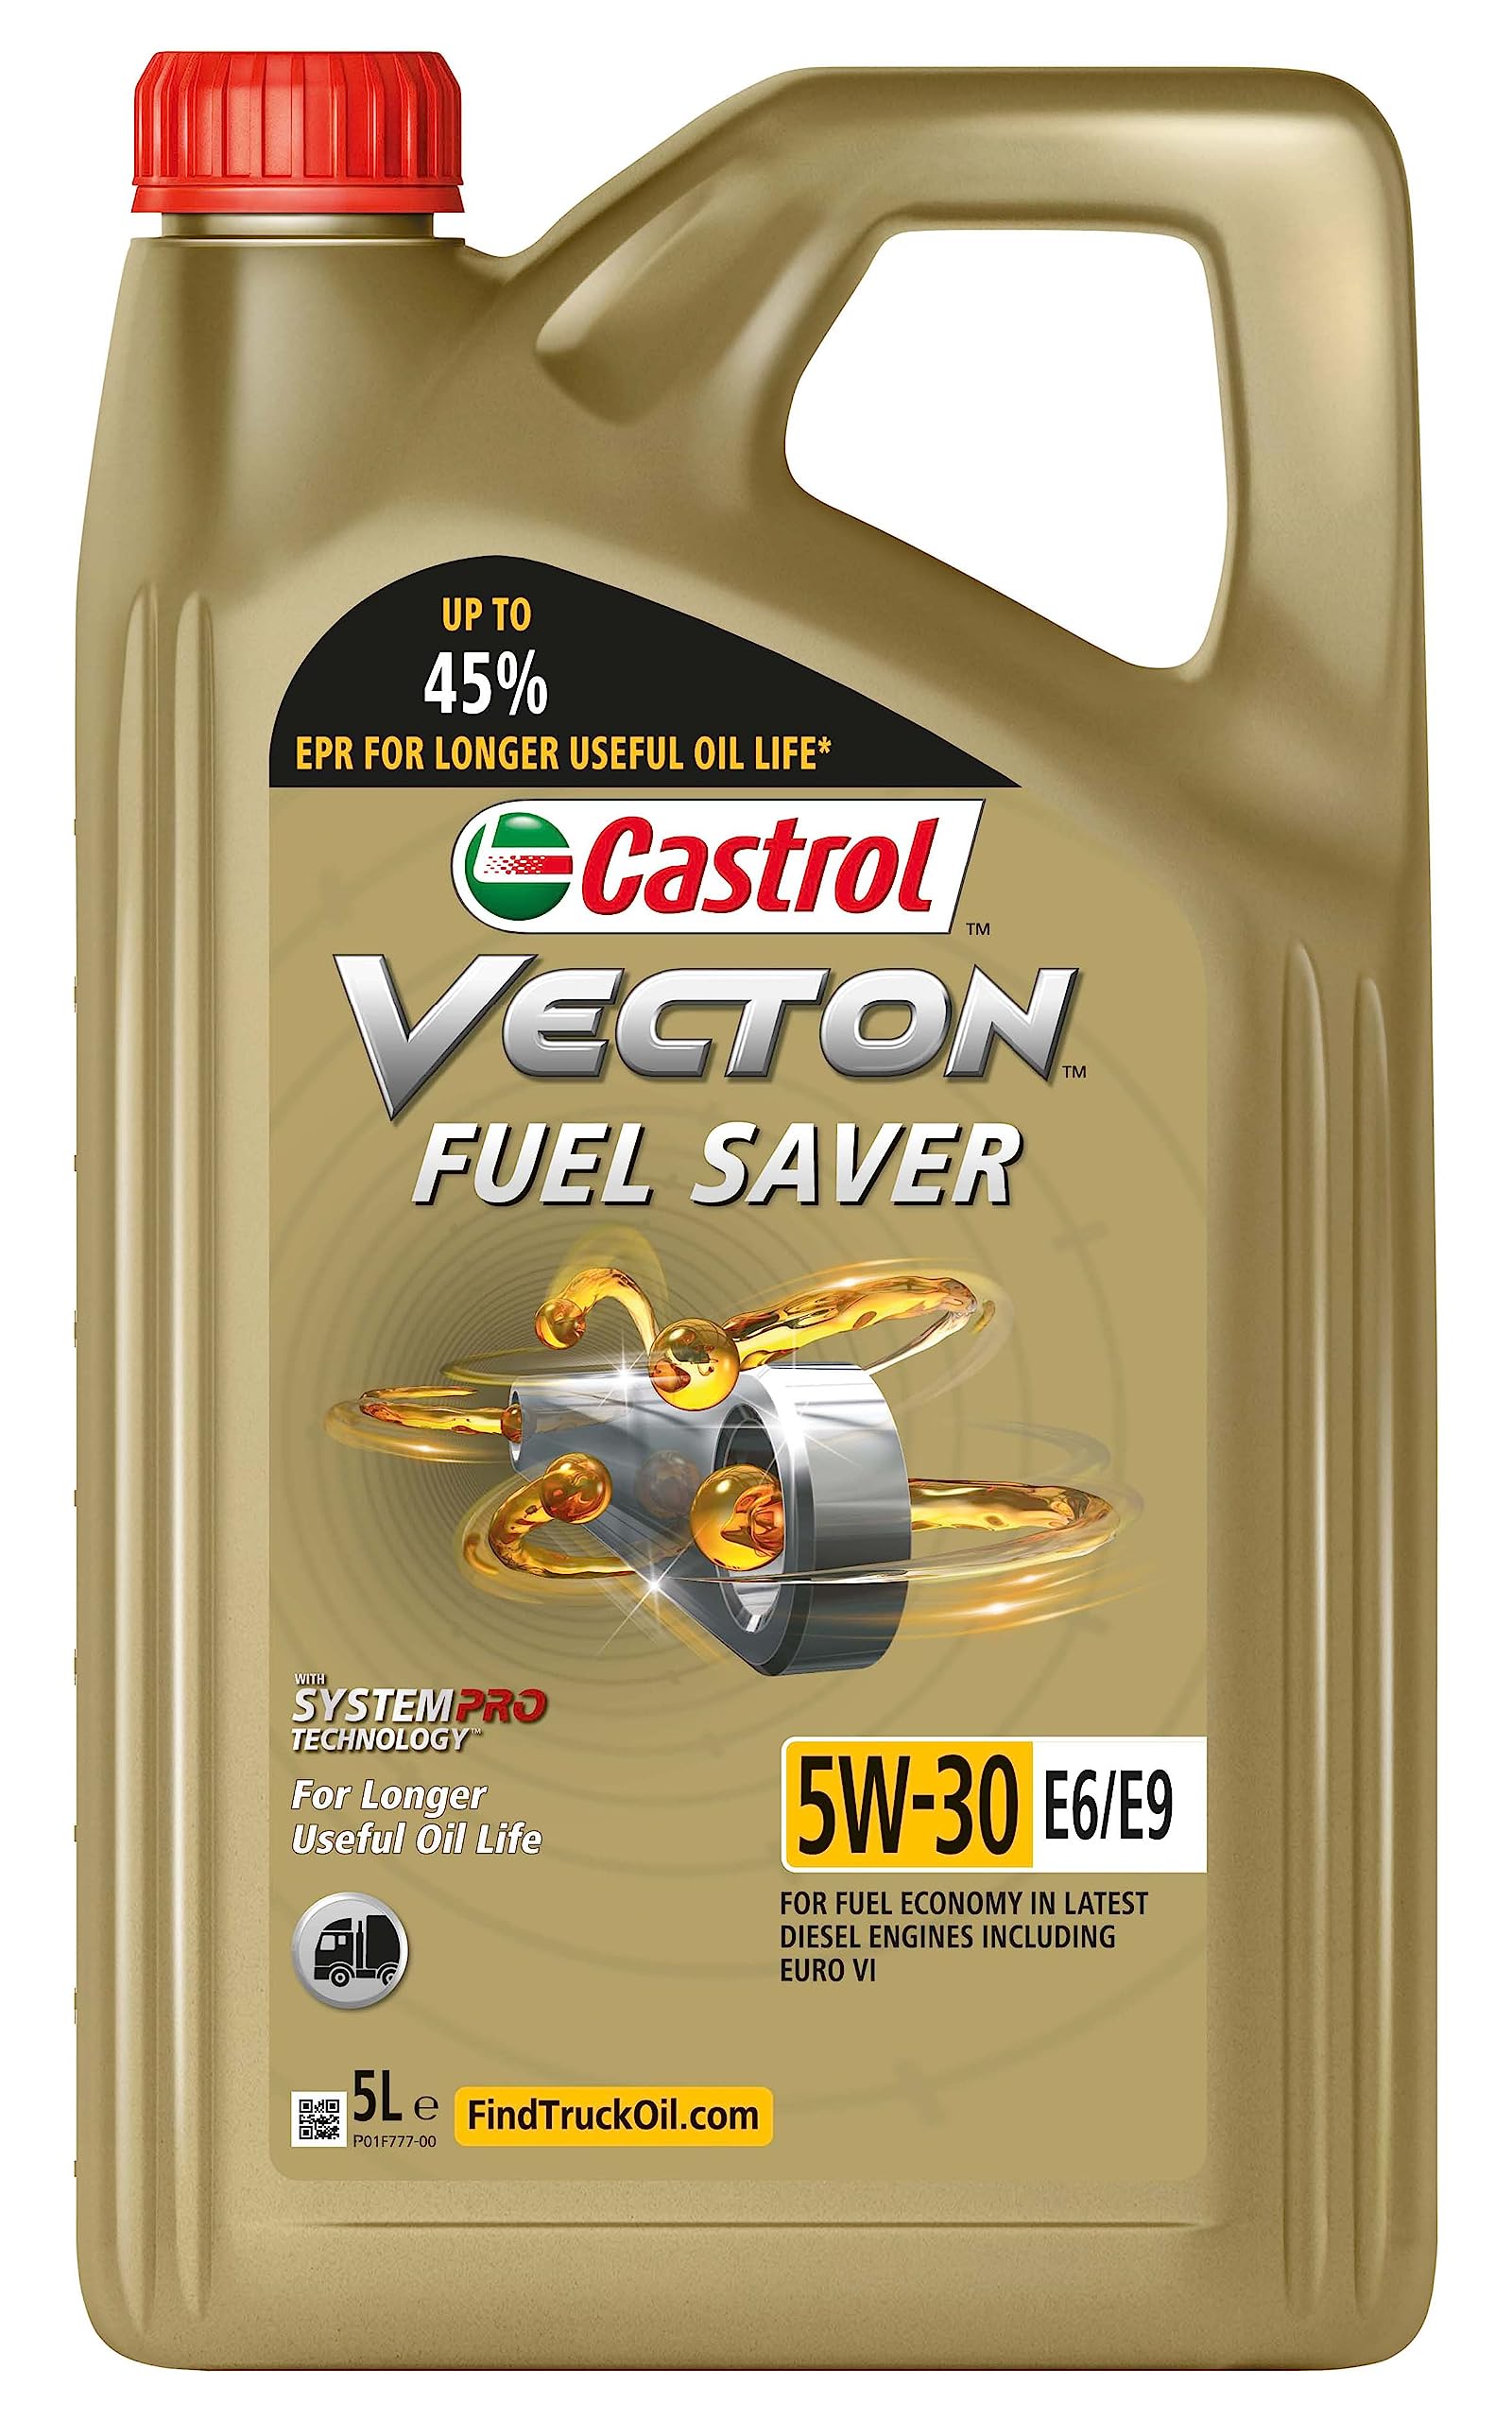 Castrol VECTON FUEL SAVER 5W-30 E6/E9 Motoröl, 5L von Castrol